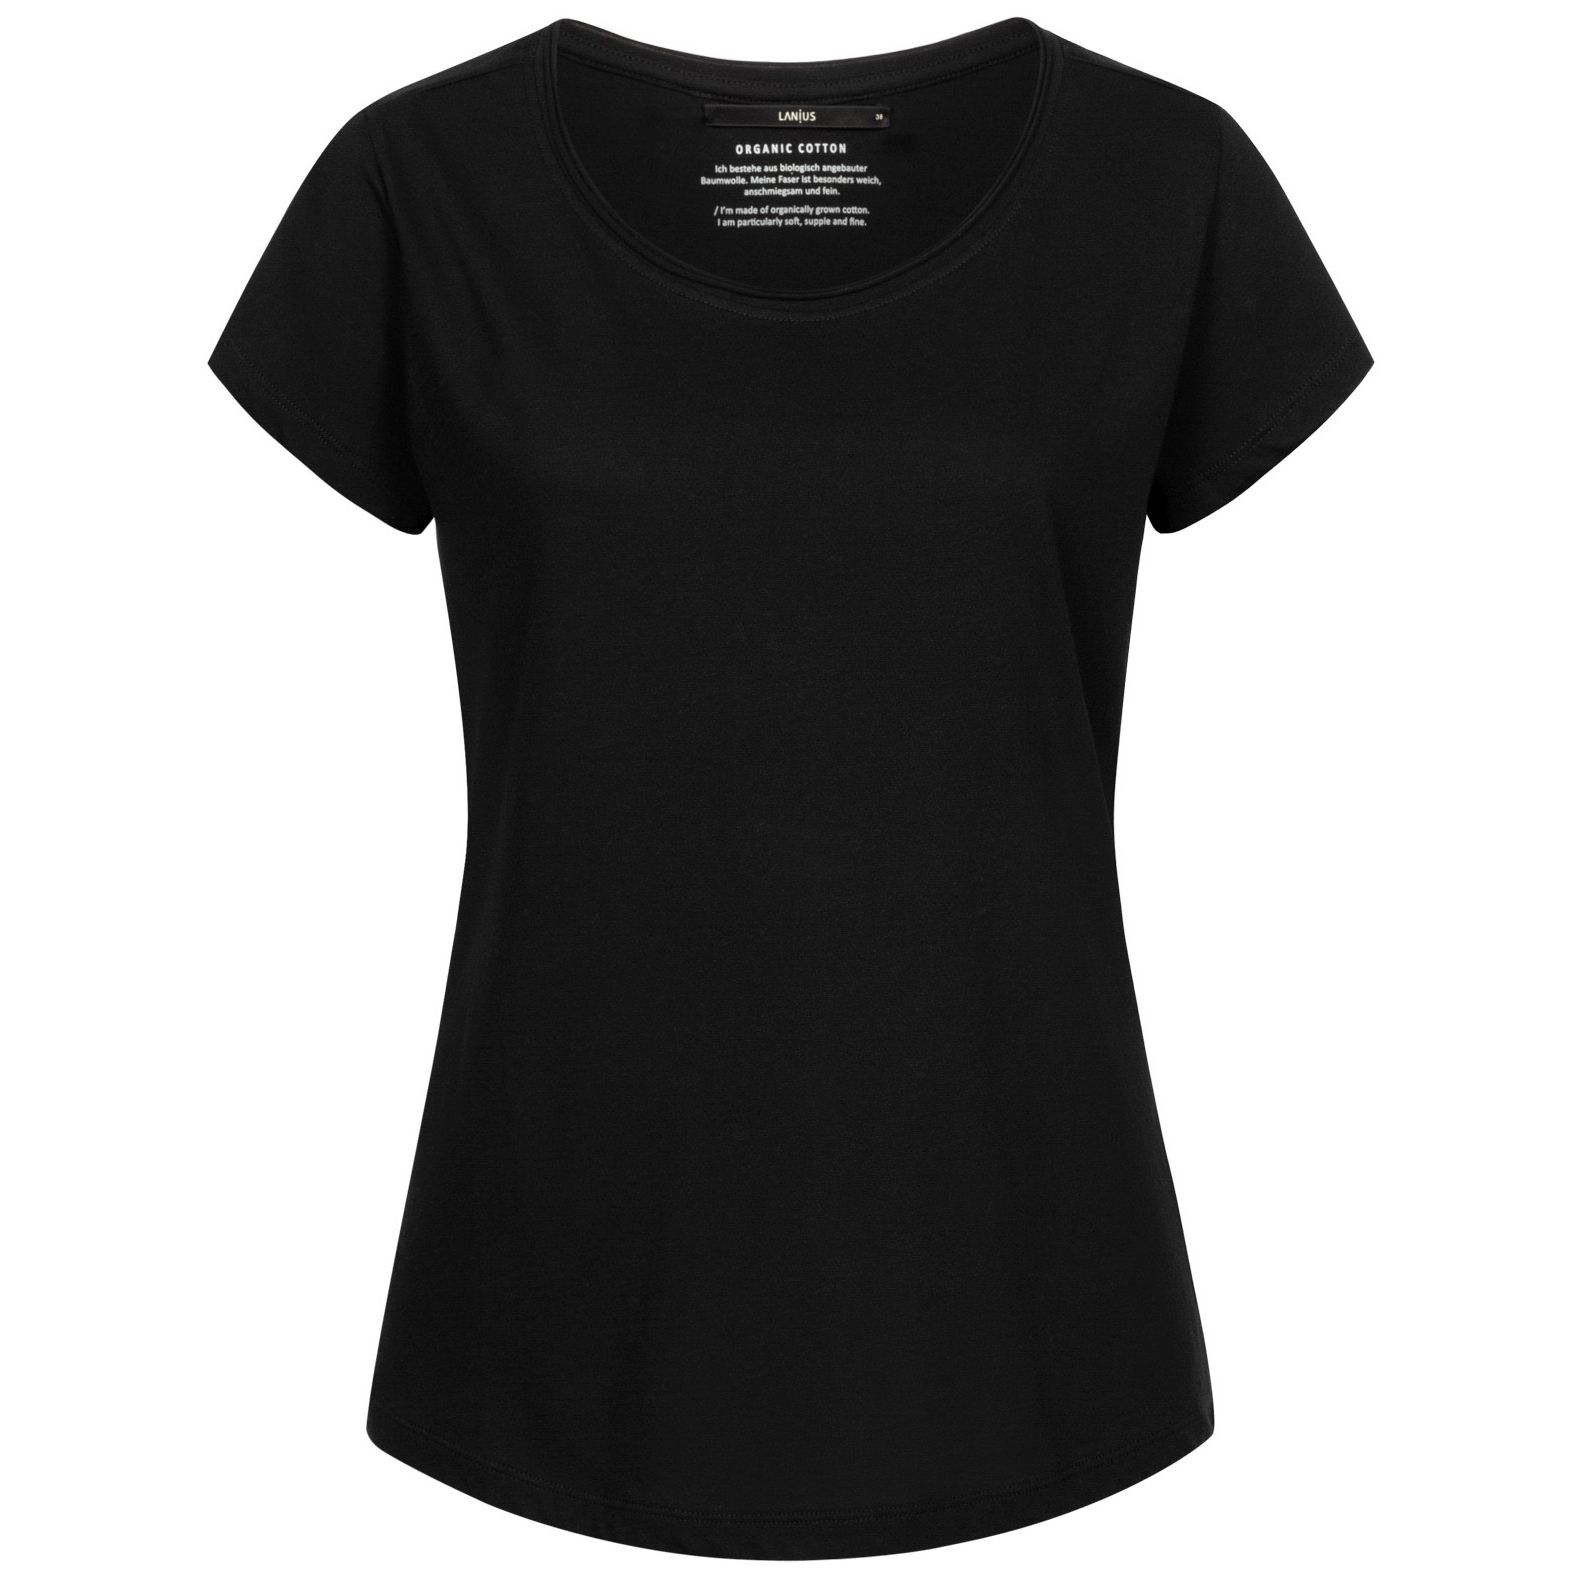 Basic T-Shirt black